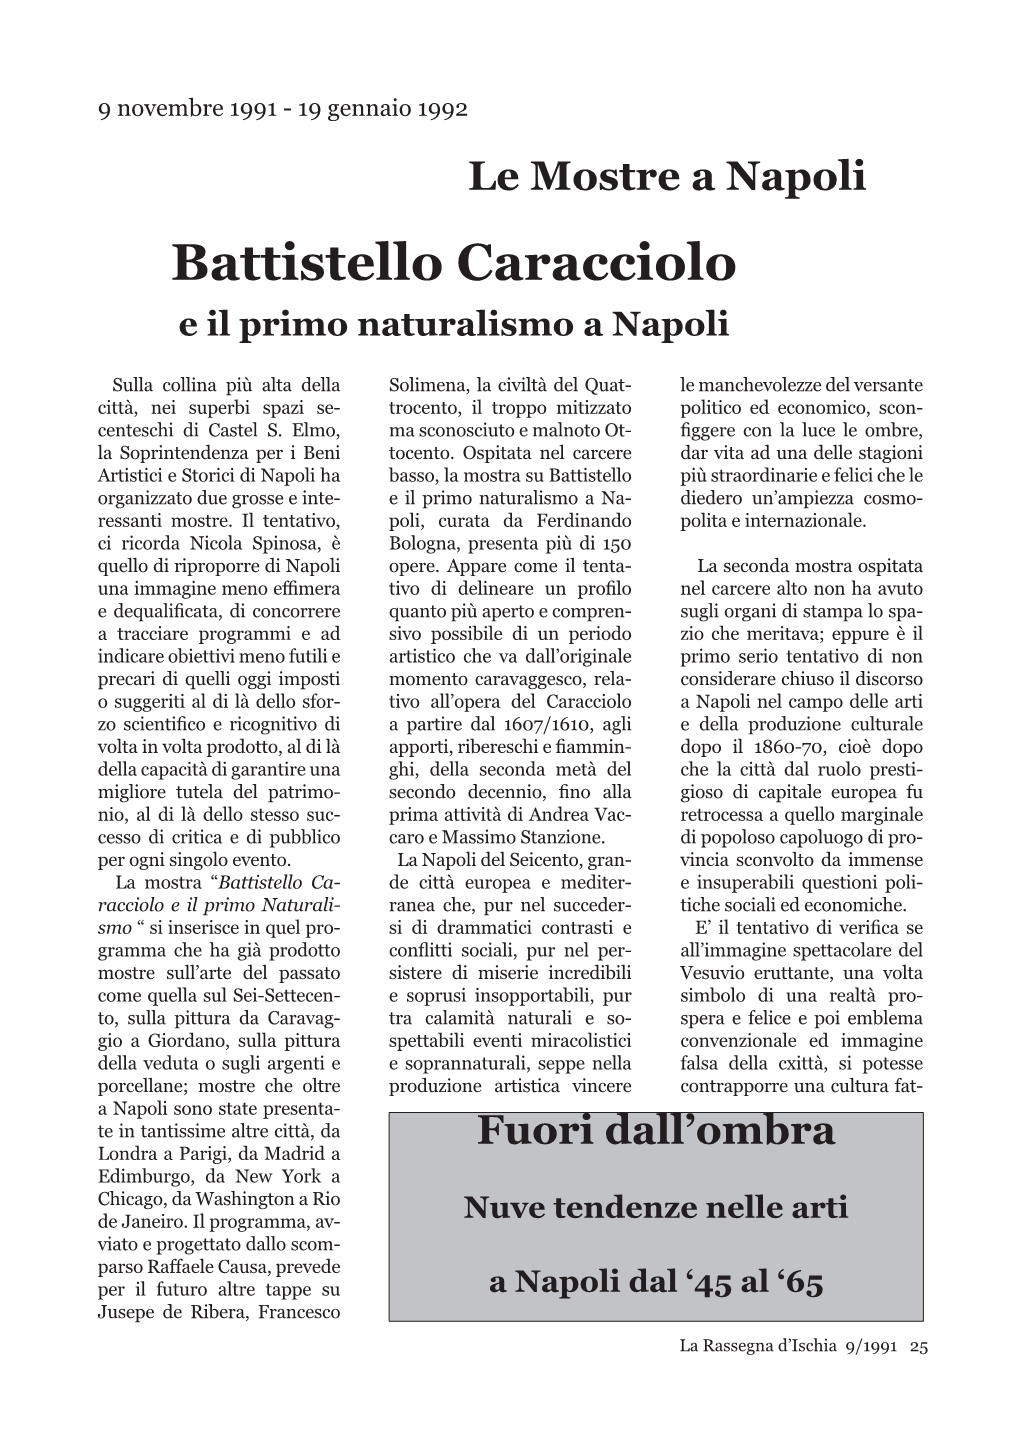 Battistello Caracciolo E Il Primo Naturalismo a Napoli